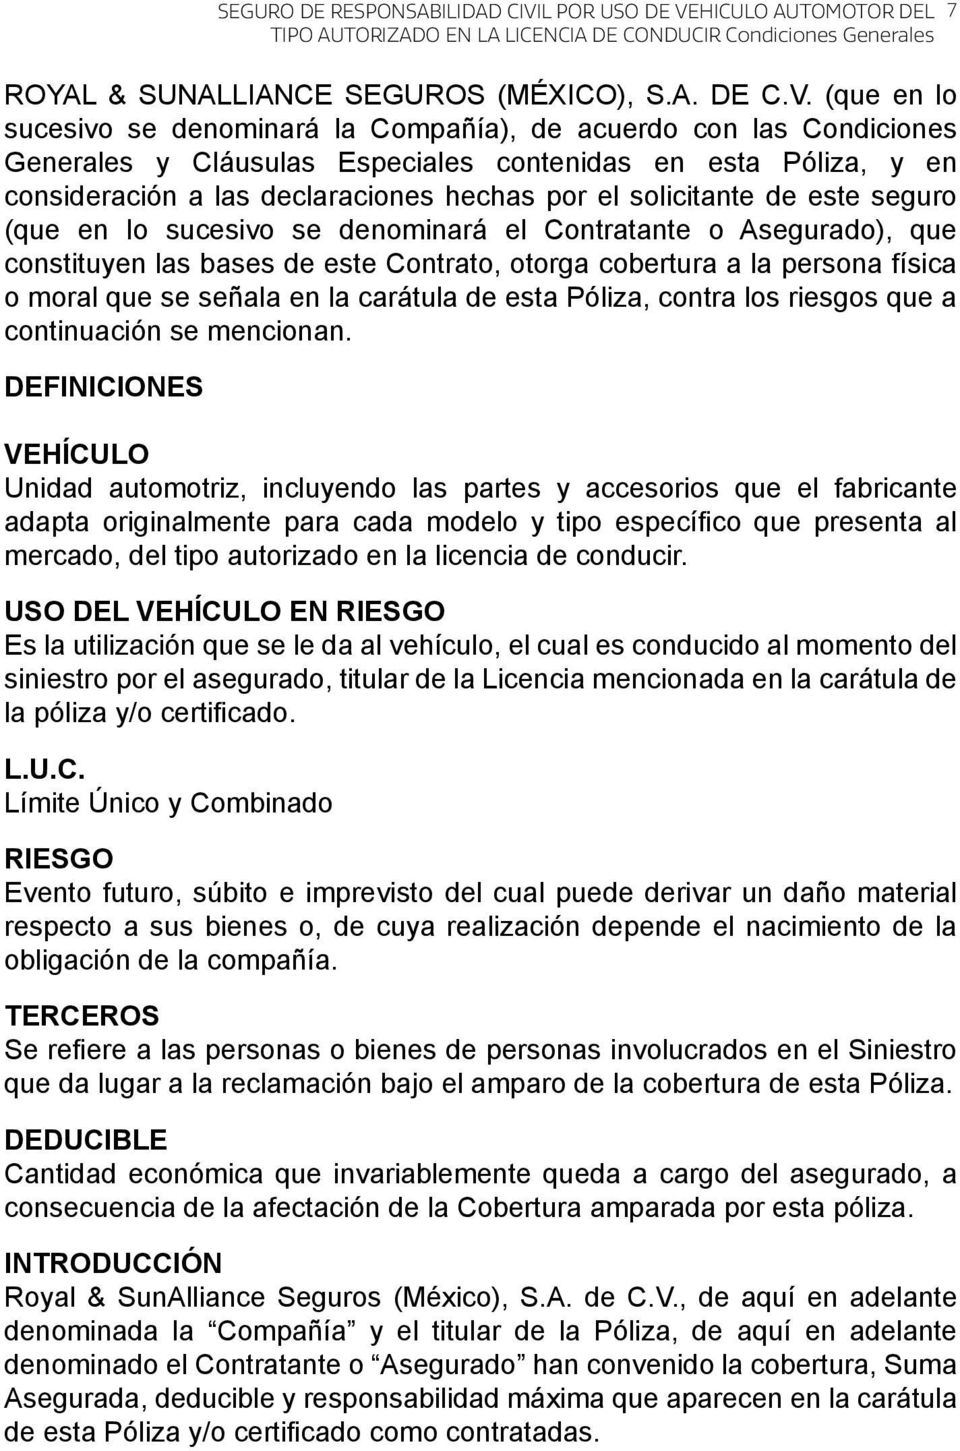 HICULO AUTOMOTOR DEL ROYAL & SUNALLIANCE SEGUROS (MÉXICO), S.A. DE C.V.